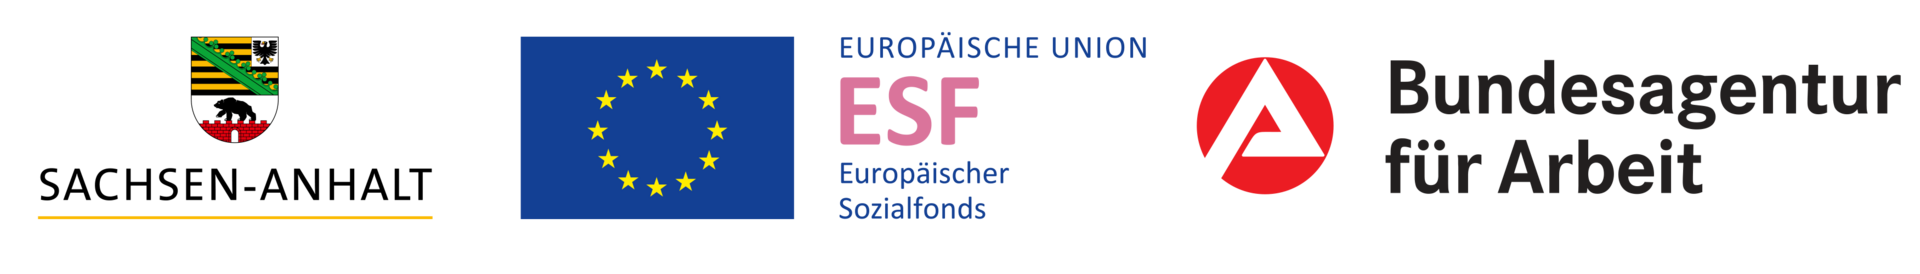 Logo Sachsen-Anhalt und Europäische Union und Bundesagentur für Arbeit